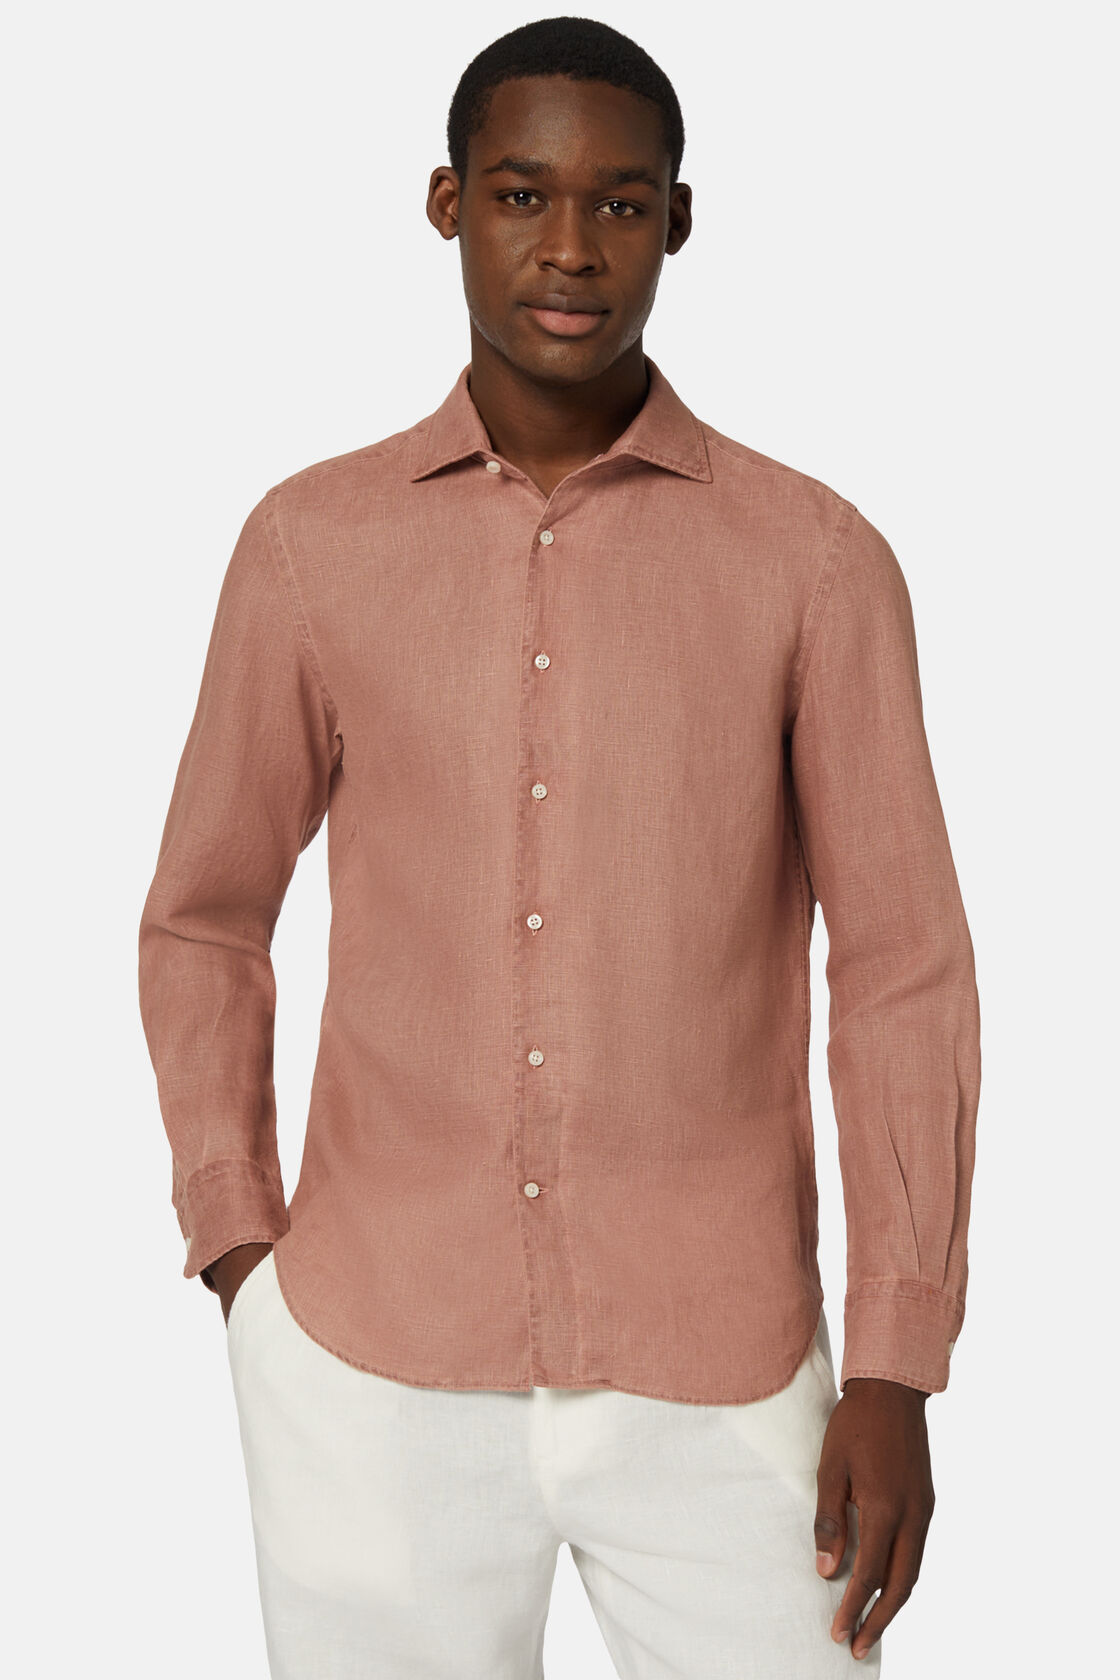 Koszula lniana w kolorze ceglastym, klasyczny fason, Rot, hi-res